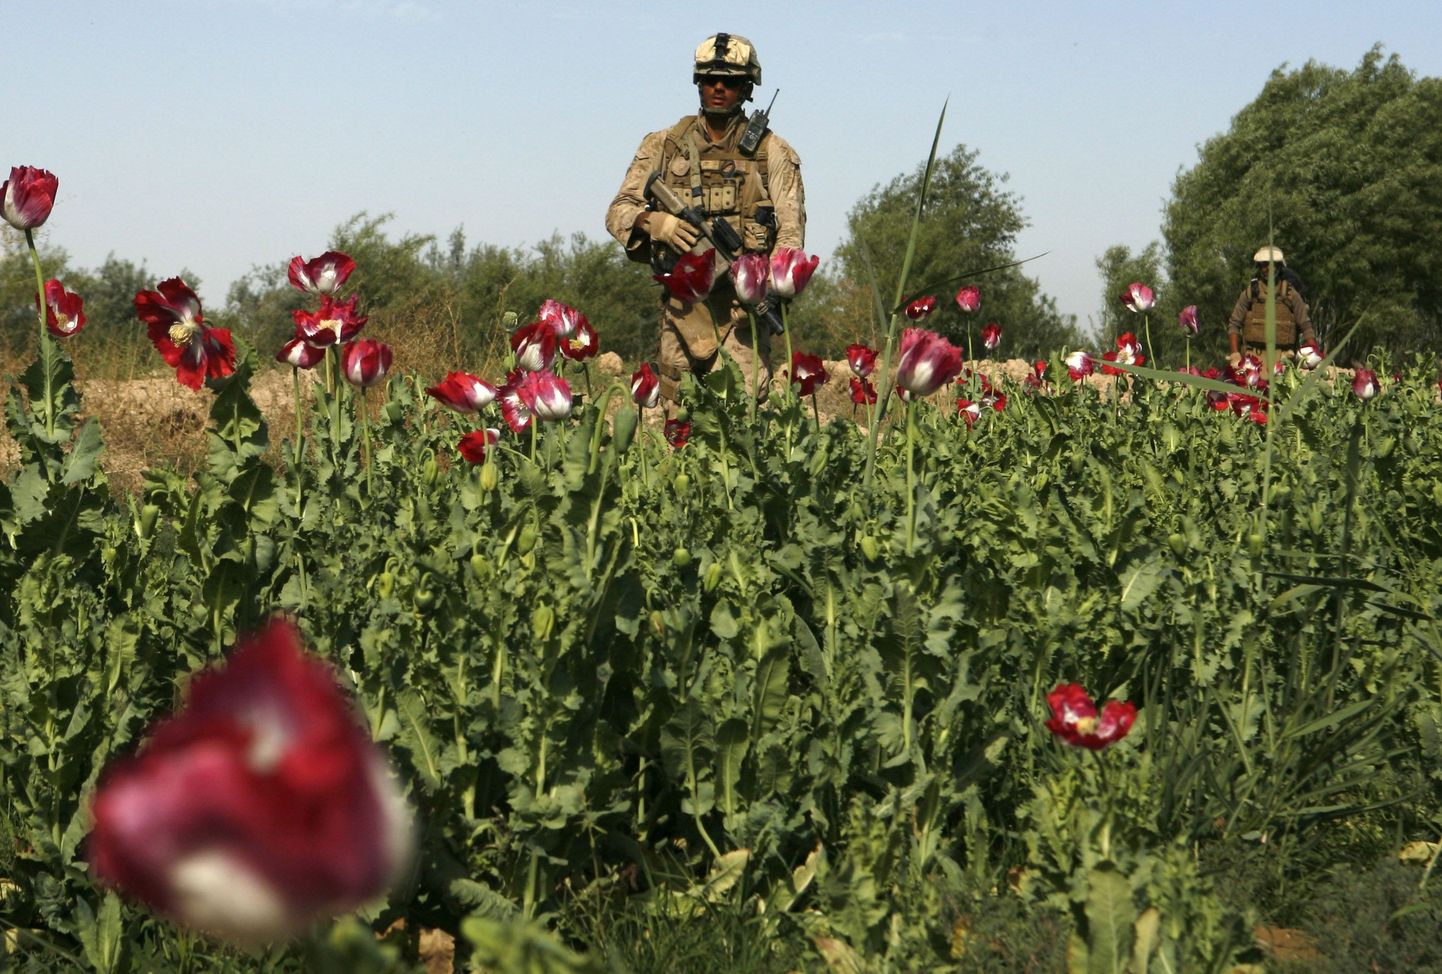 USA merejalaväelane õitsval moonipõllul Afganistanis Helmandi provintsis Marjahi rajoonis.